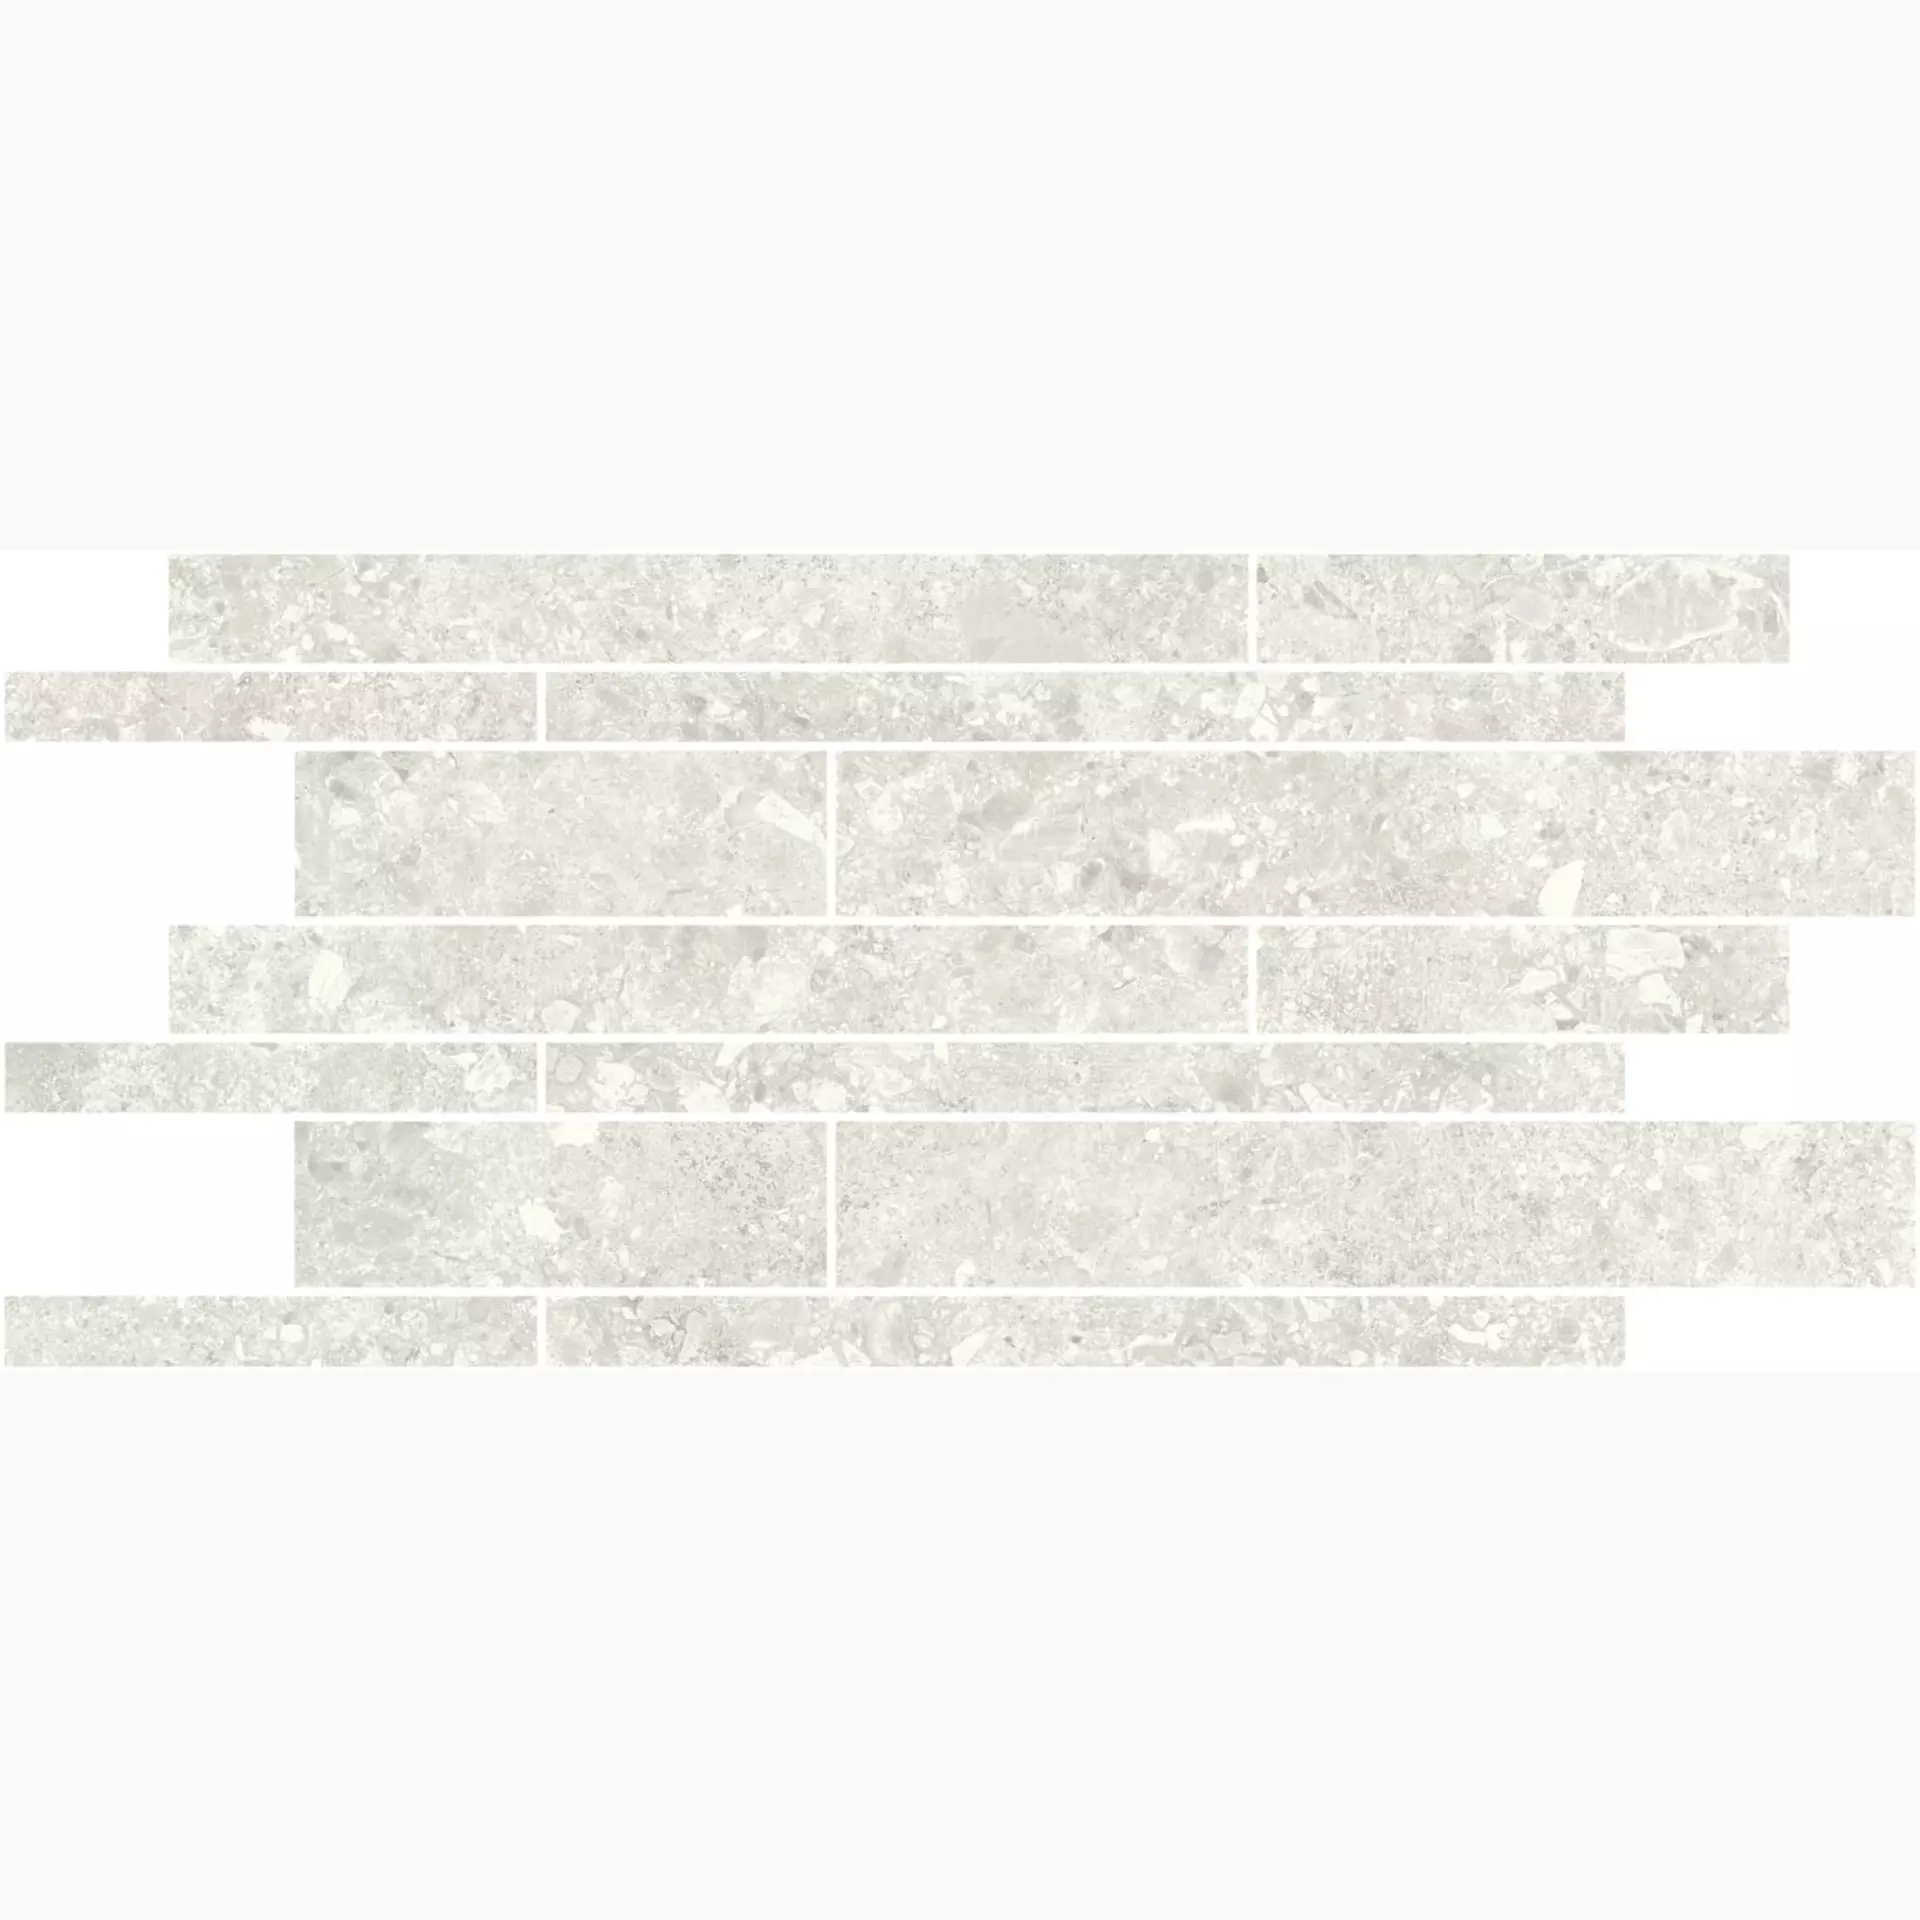 Magica Ceppo White Matt Brick Wall MACE01M36N 30x60cm 9mm